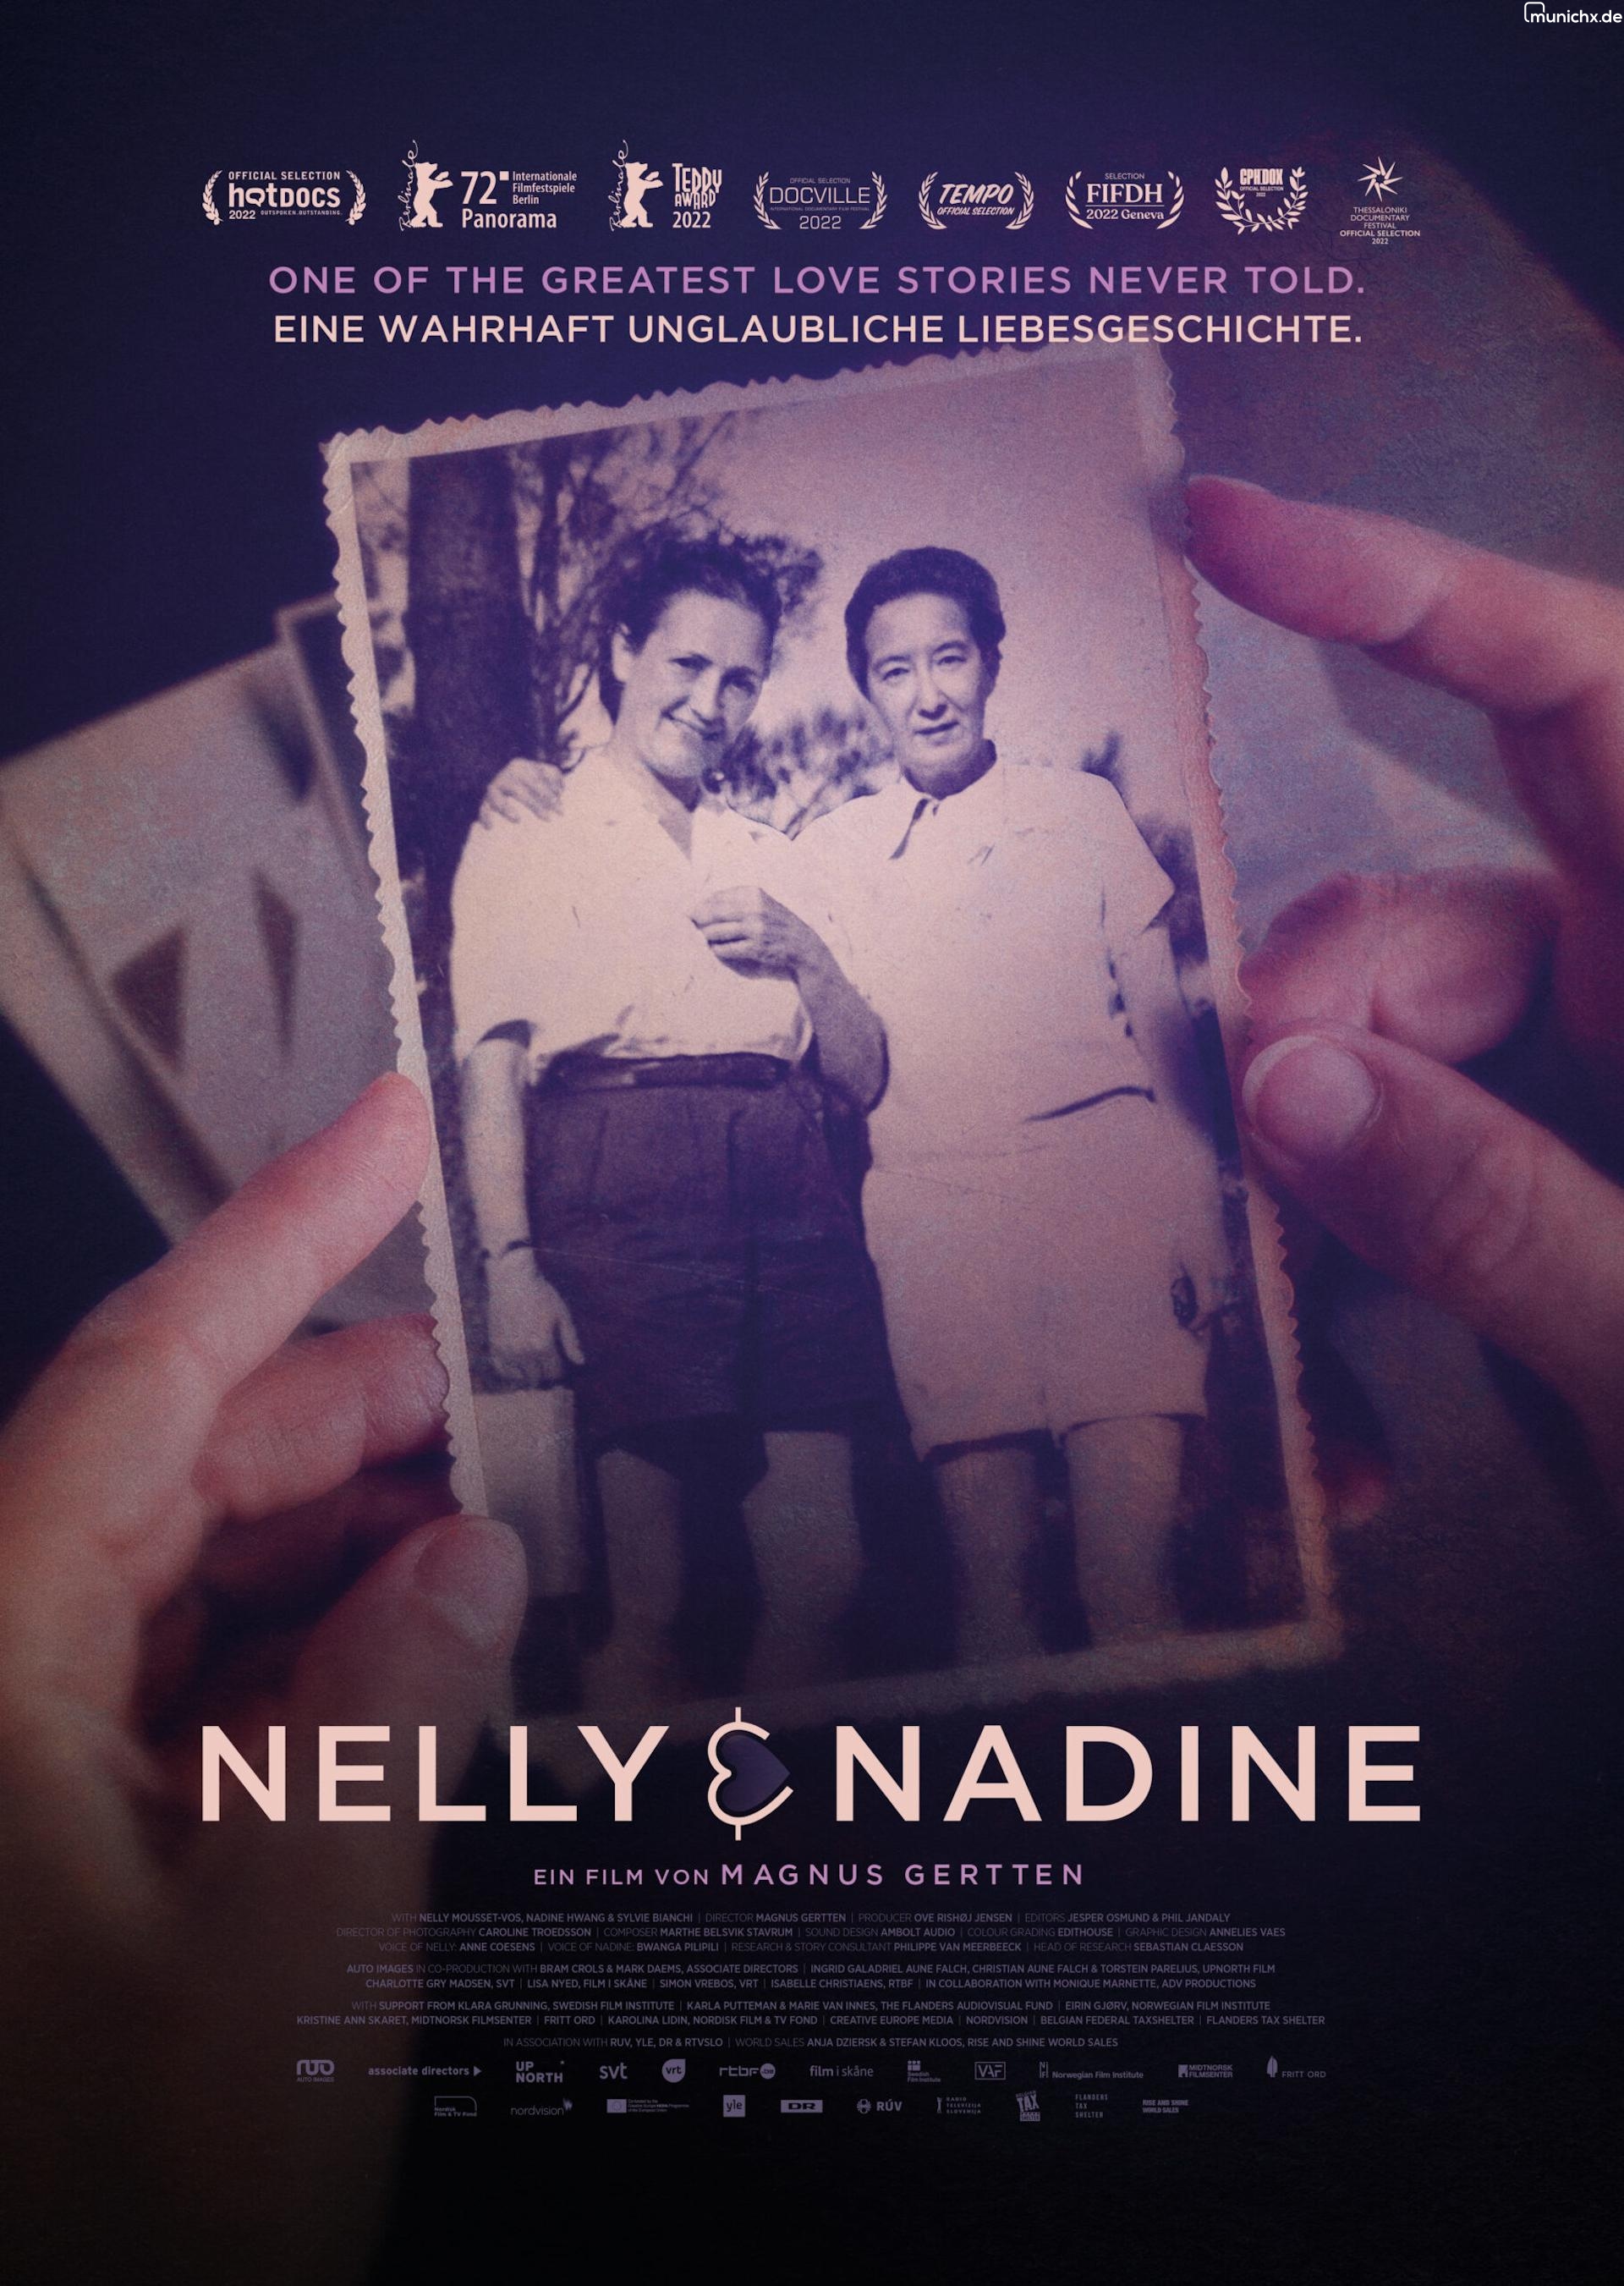 Nelly & Nadine - Eine wahrhaft unglaubliche Liebesgeschichte